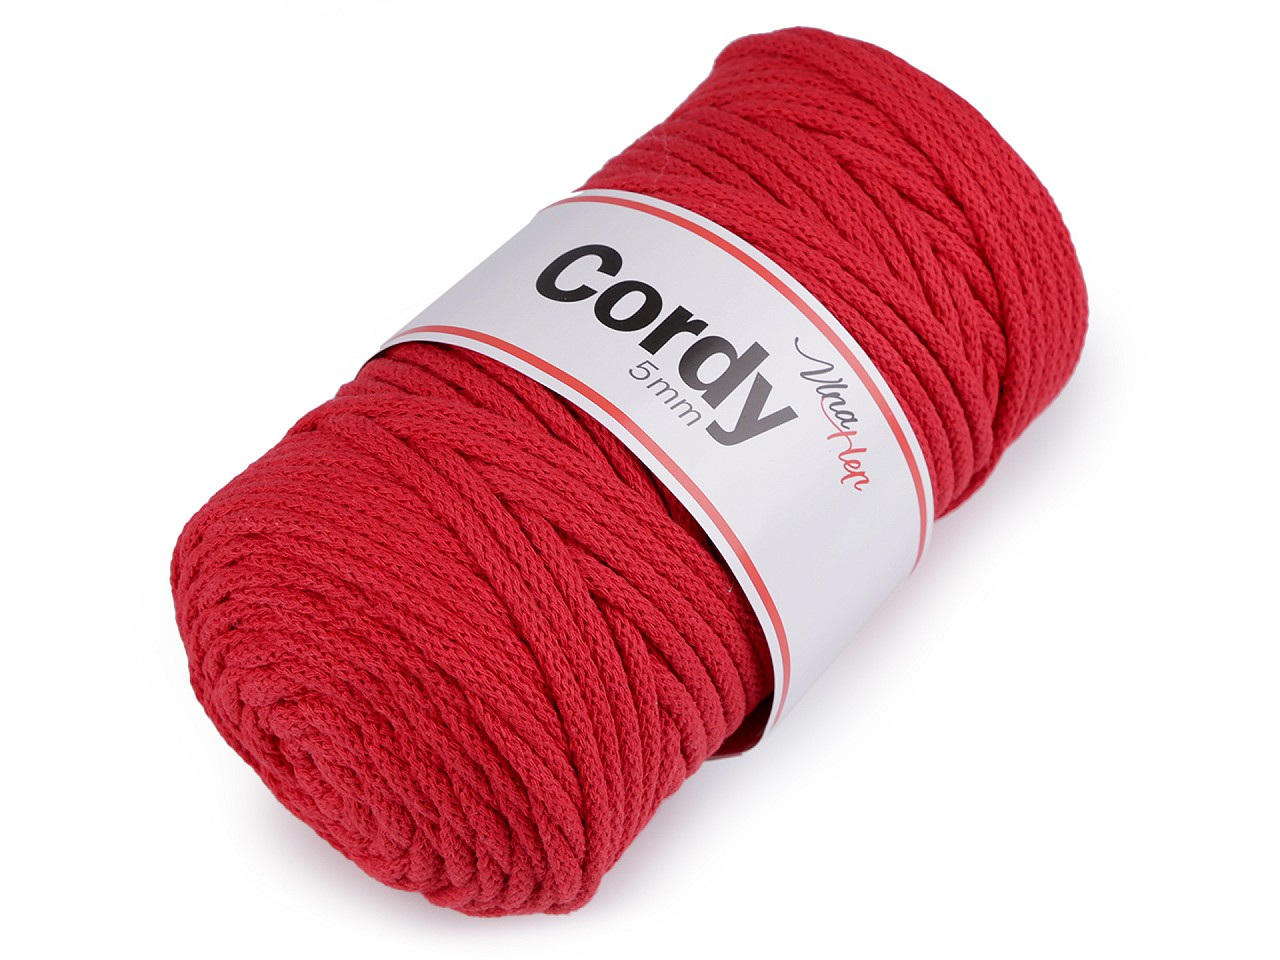 Provázková příze 100 m Cordy, barva 22 (8009) červená rumělka